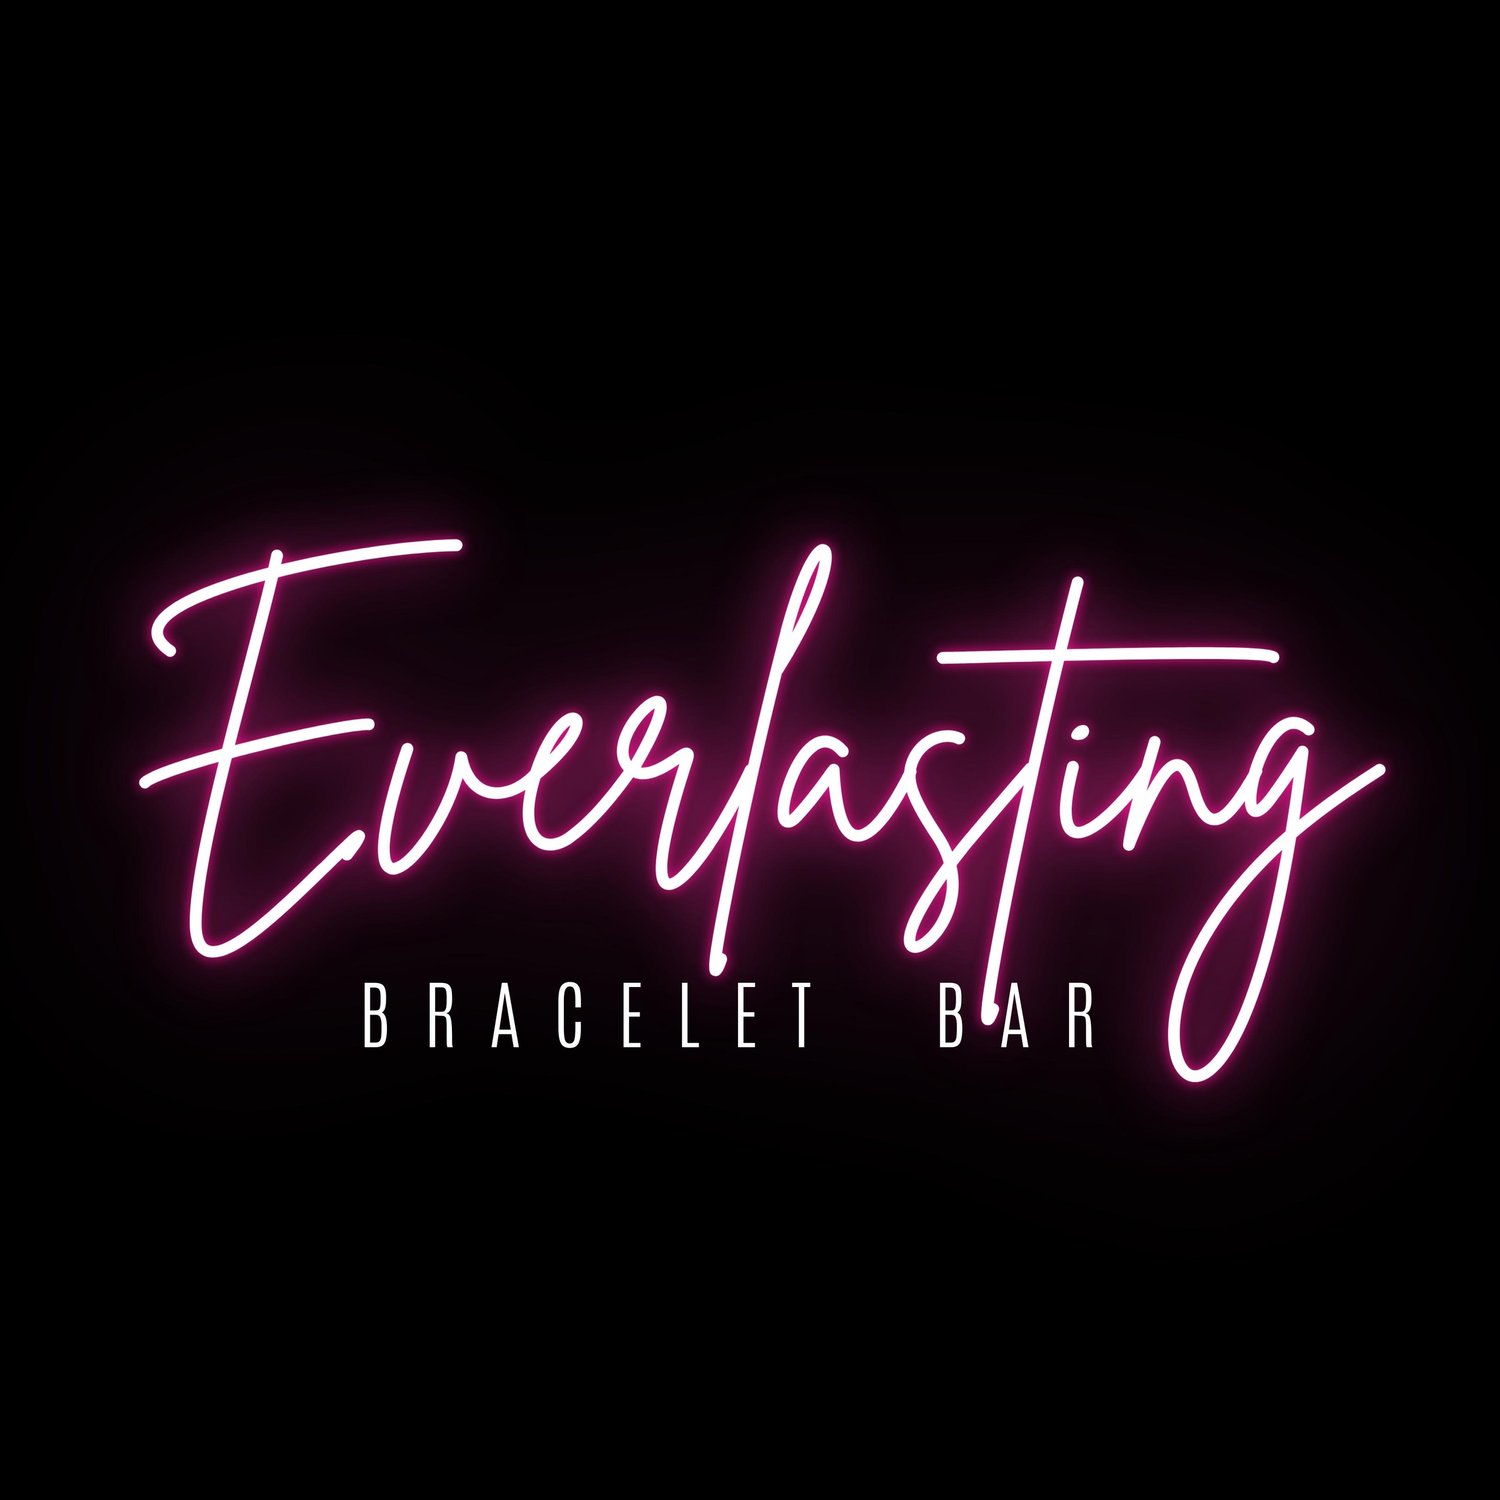 Everlasting Bracelet Bar